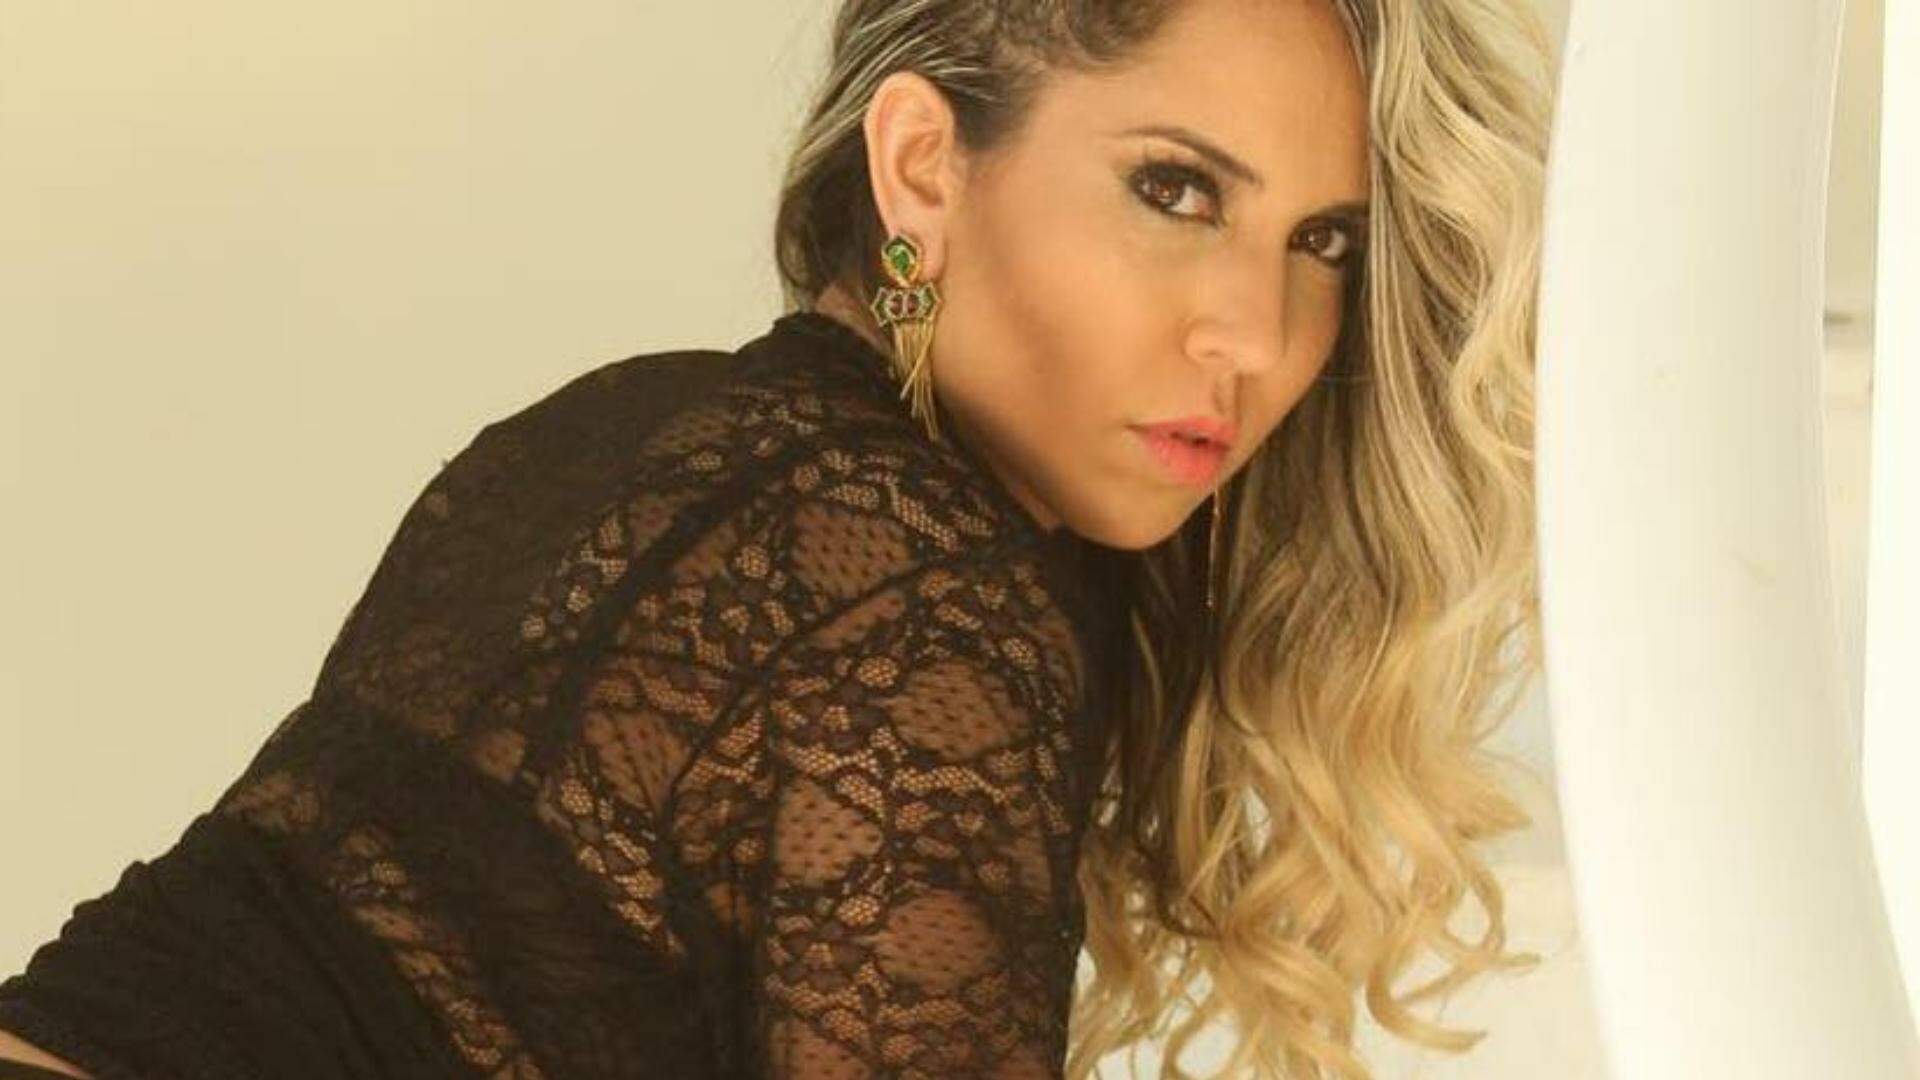 Mulher Melão agacha usando sua lingerie mais transparente na janela de casa: “Loucura” - Metropolitana FM